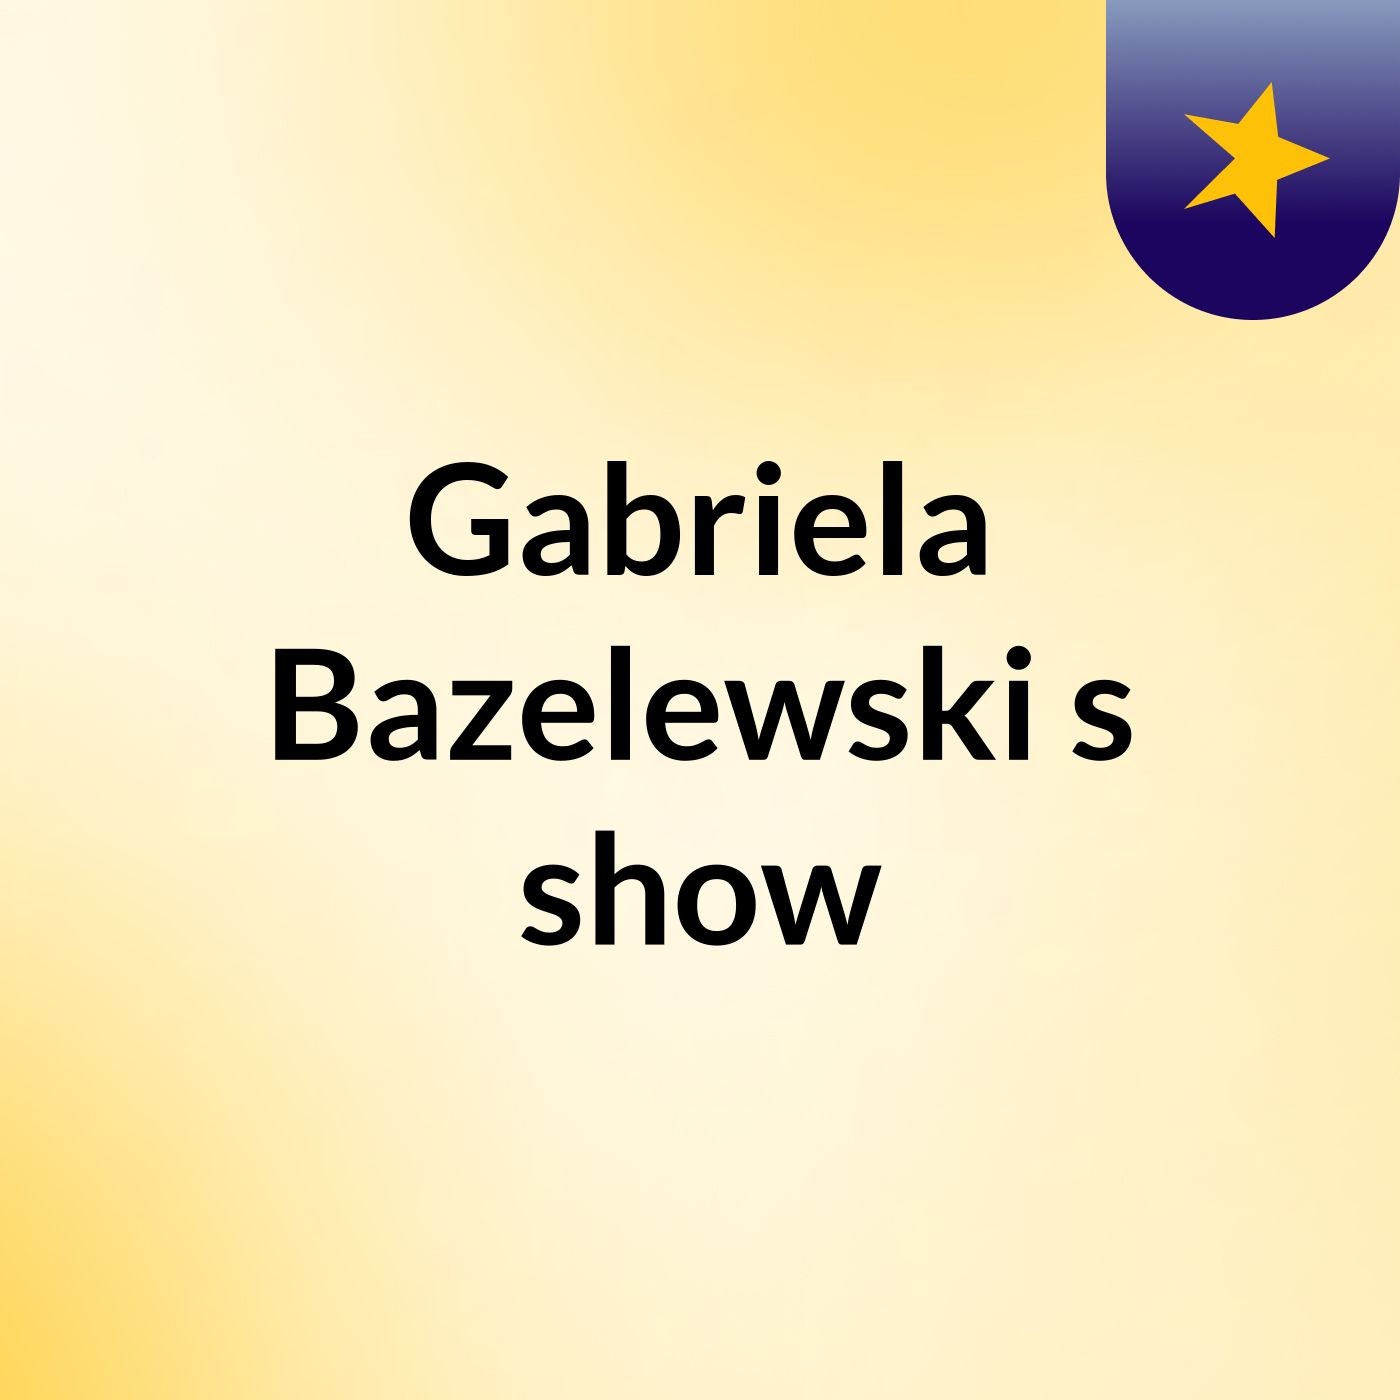 Gabriela Bazelewski's show